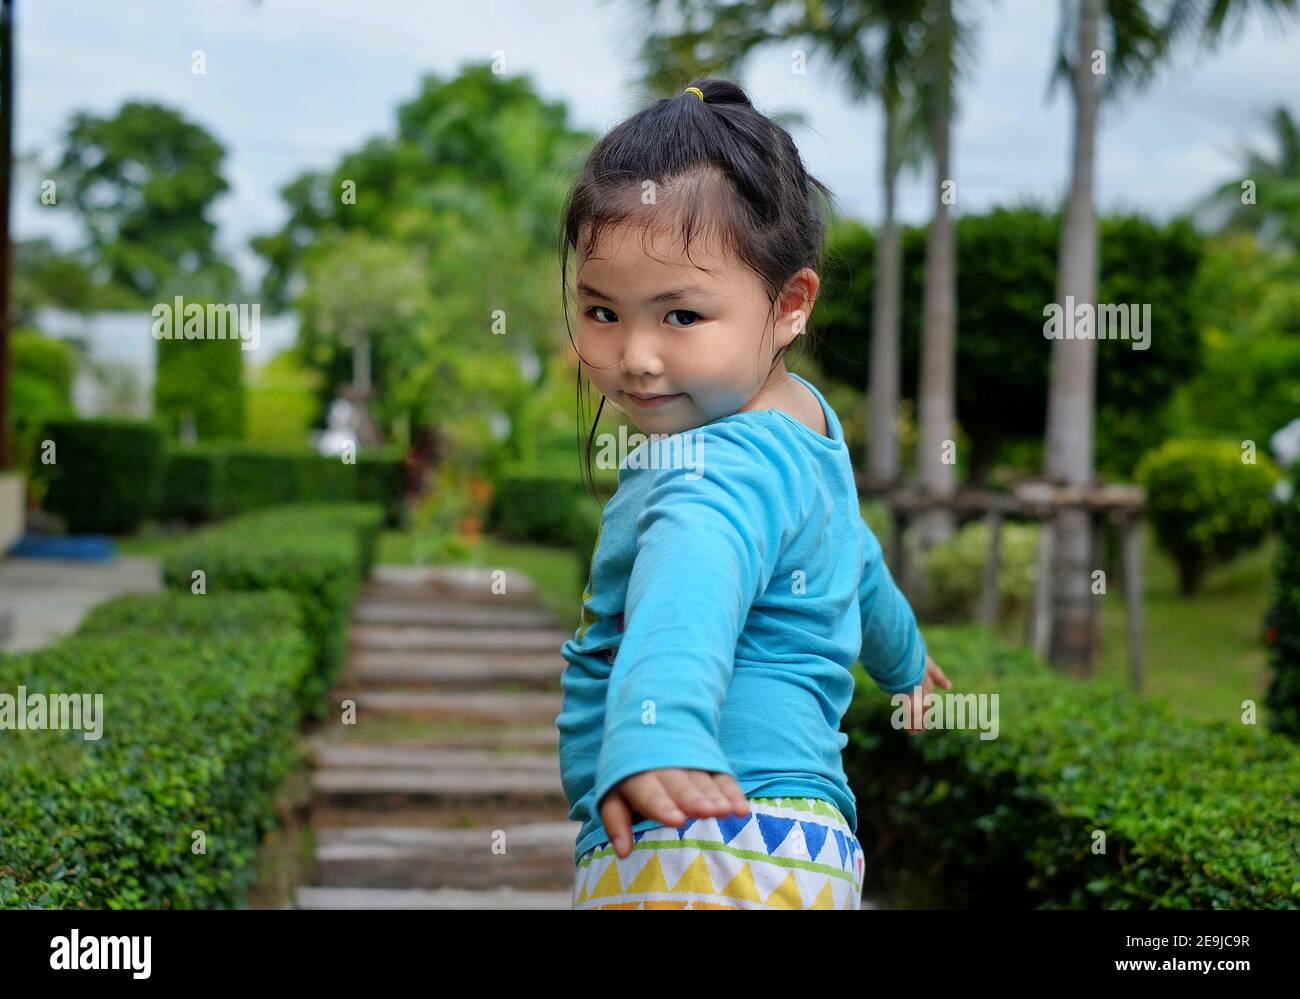 Ein süßes junges asiatisches Mädchen mit einem leuchtend blauen Hemd schlendert in einem Park mit Steinsteg herum und dreht sich um ein Posing für die Kamera, nachdem es war Stockfoto